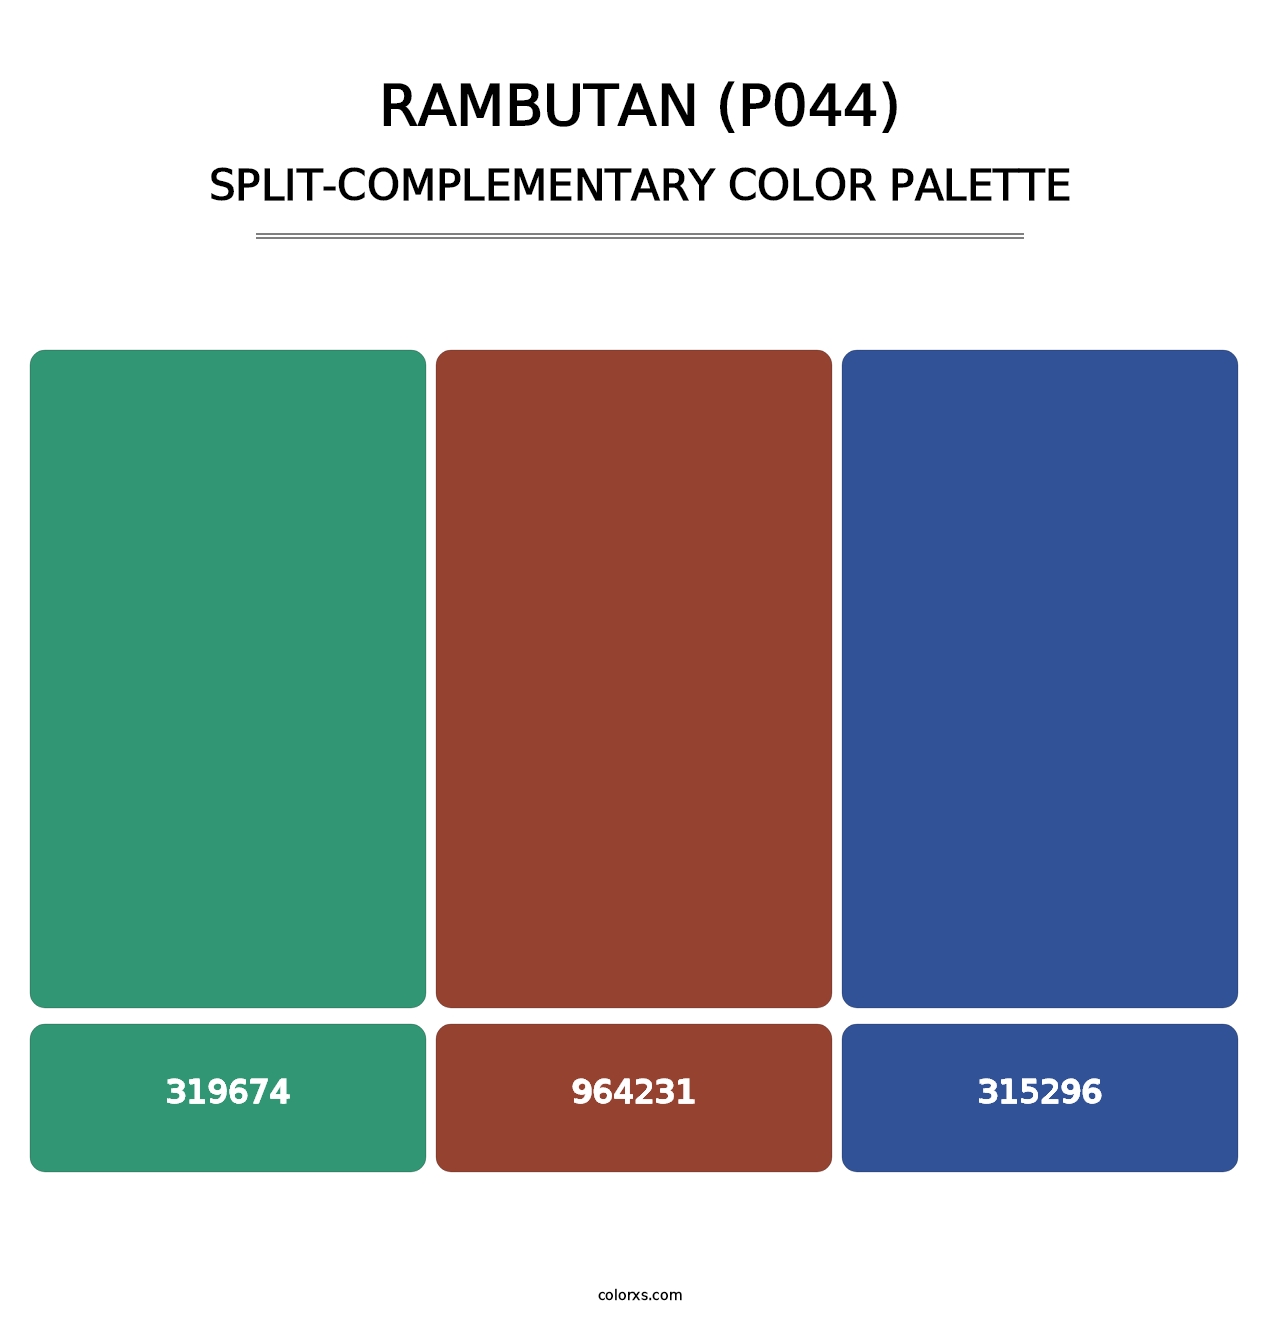 Rambutan (P044) - Split-Complementary Color Palette